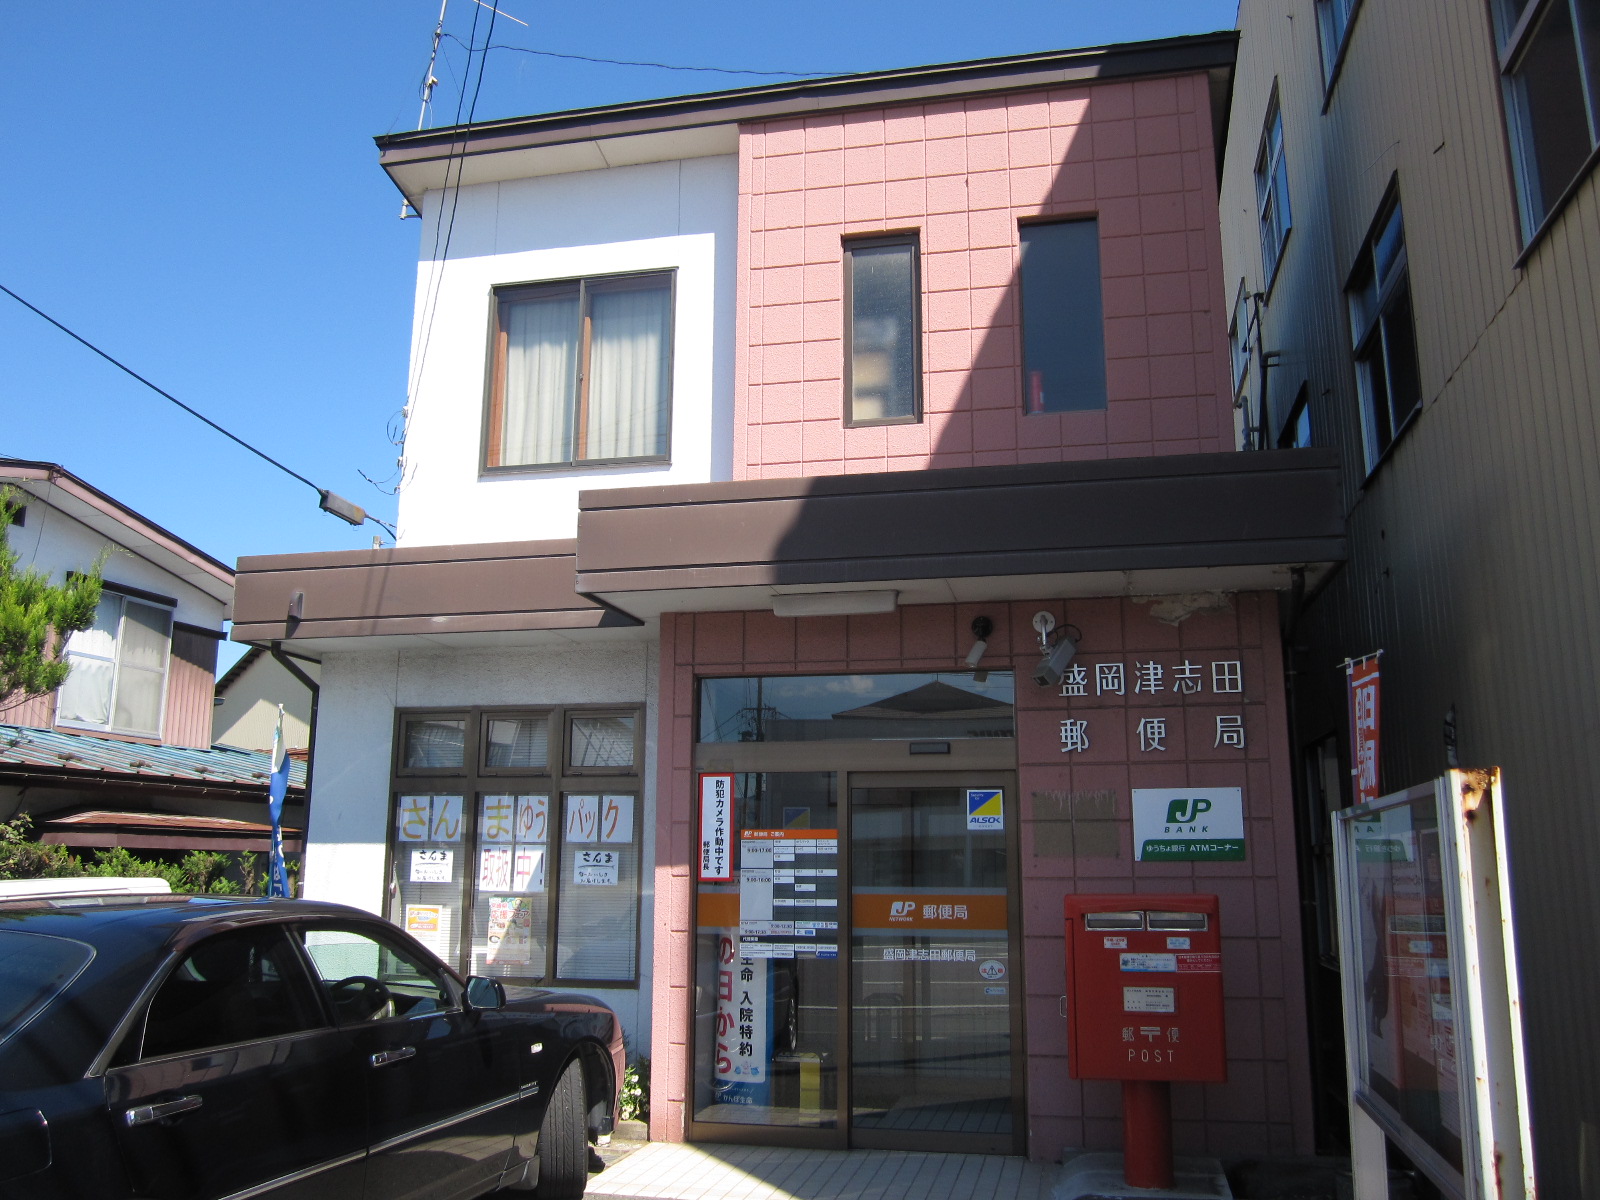 post office. 638m to Morioka Tsushida post office (post office)